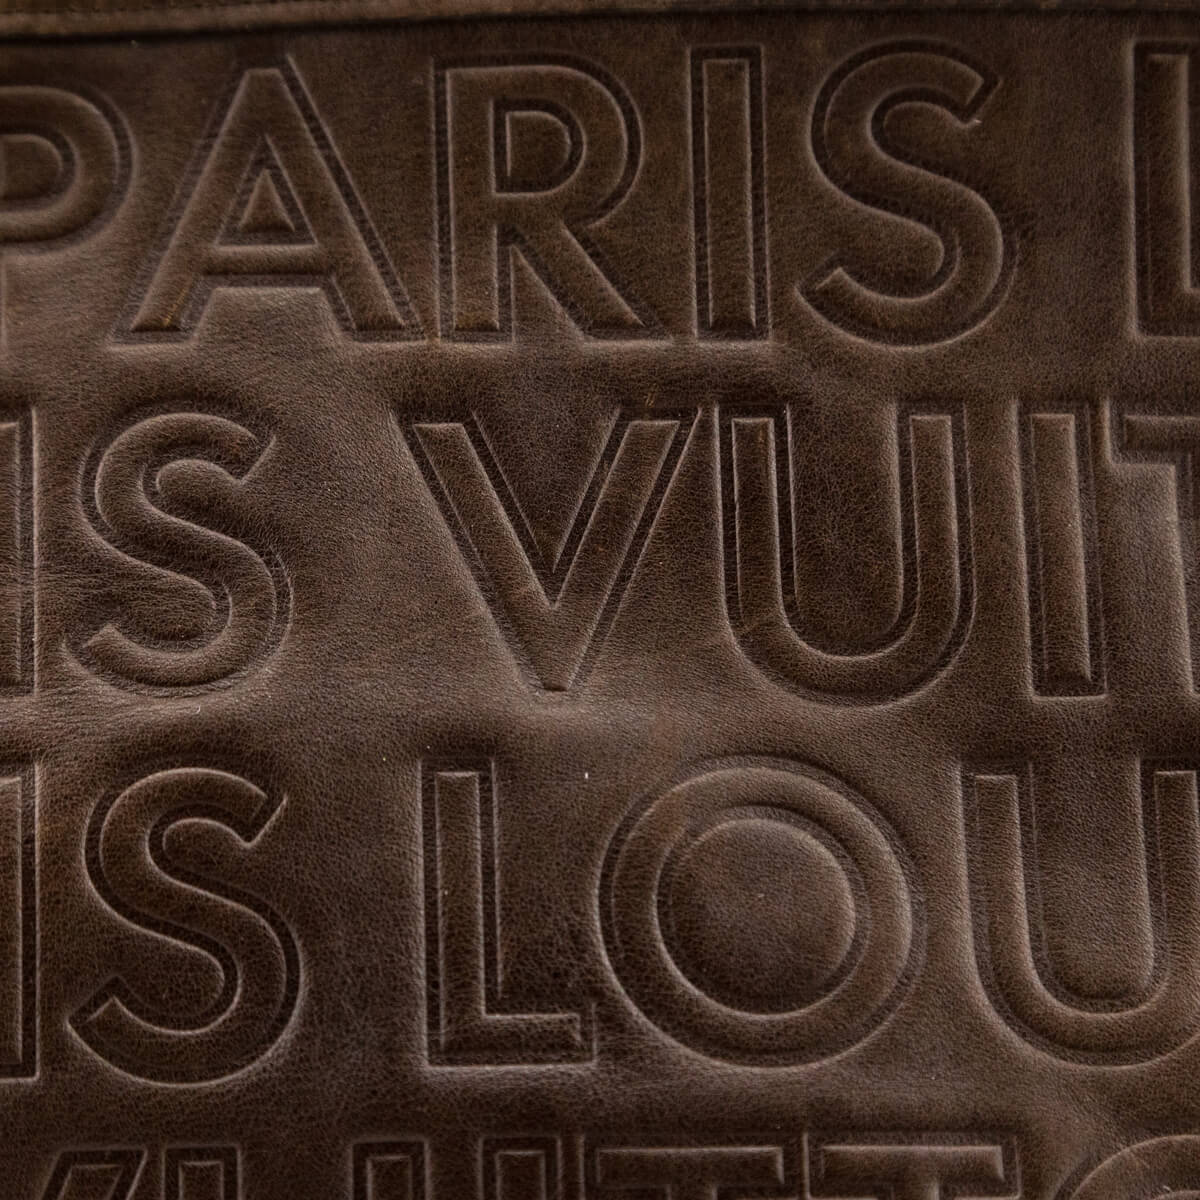 LOUIS VUITTON Paris Souple Wish PM Calf Chocolate Brown Shoulder Bag #9  Rise-on